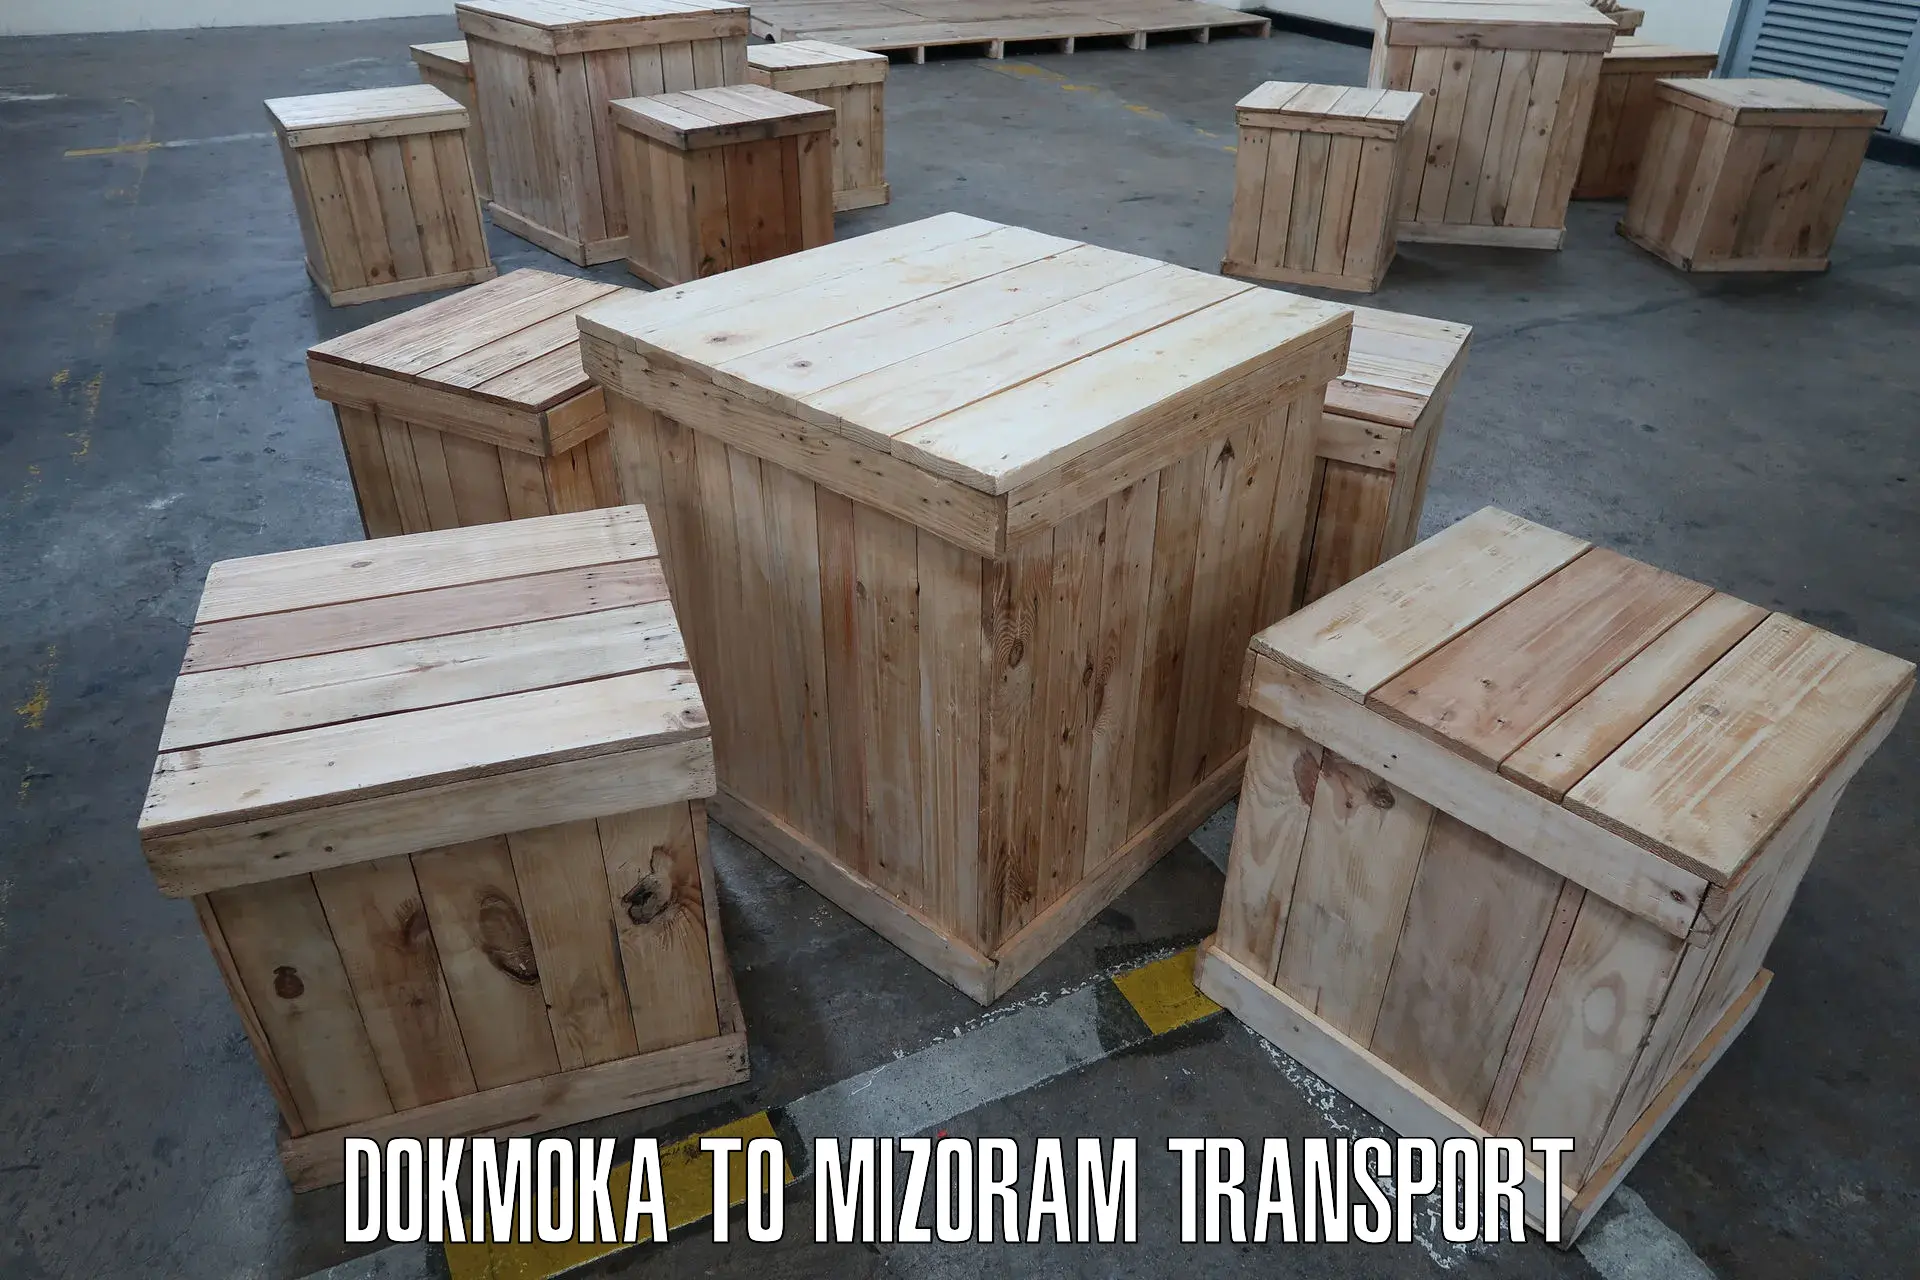 Daily transport service in Dokmoka to Aizawl